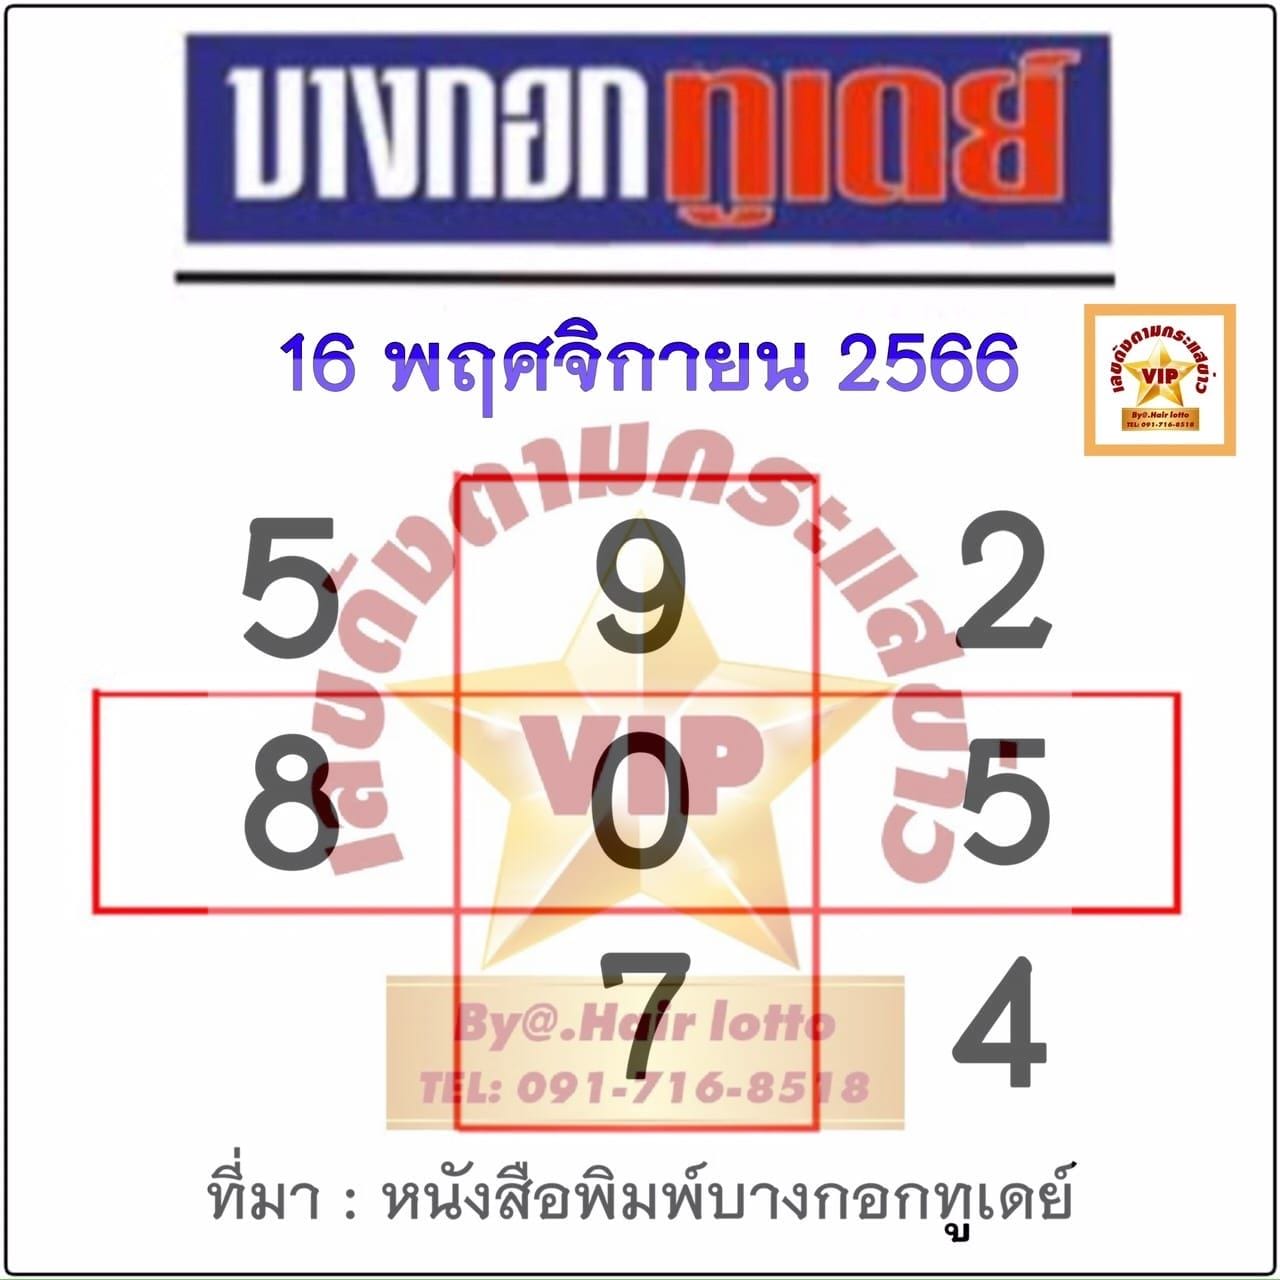 บางกอกทูเดย์ 16 11 66-"Bangkok Today 16 11 66"